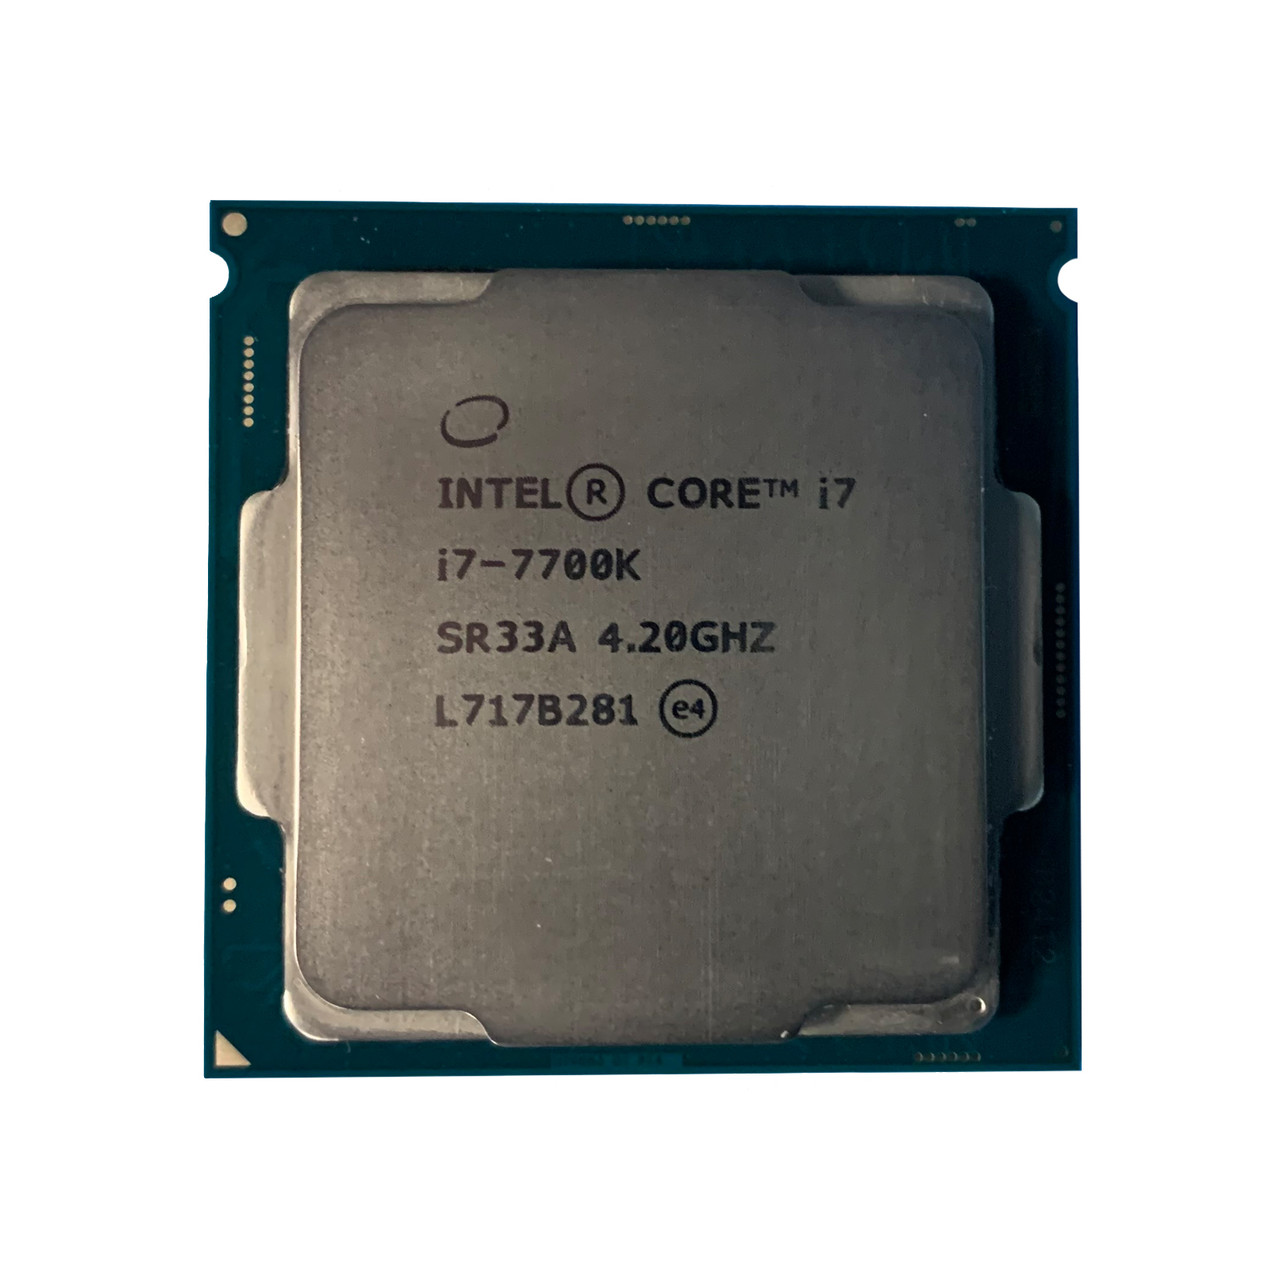 Dell G0X16 | Intel i7-7700K QC 4.20Ghz 8MB 8GTs Processor